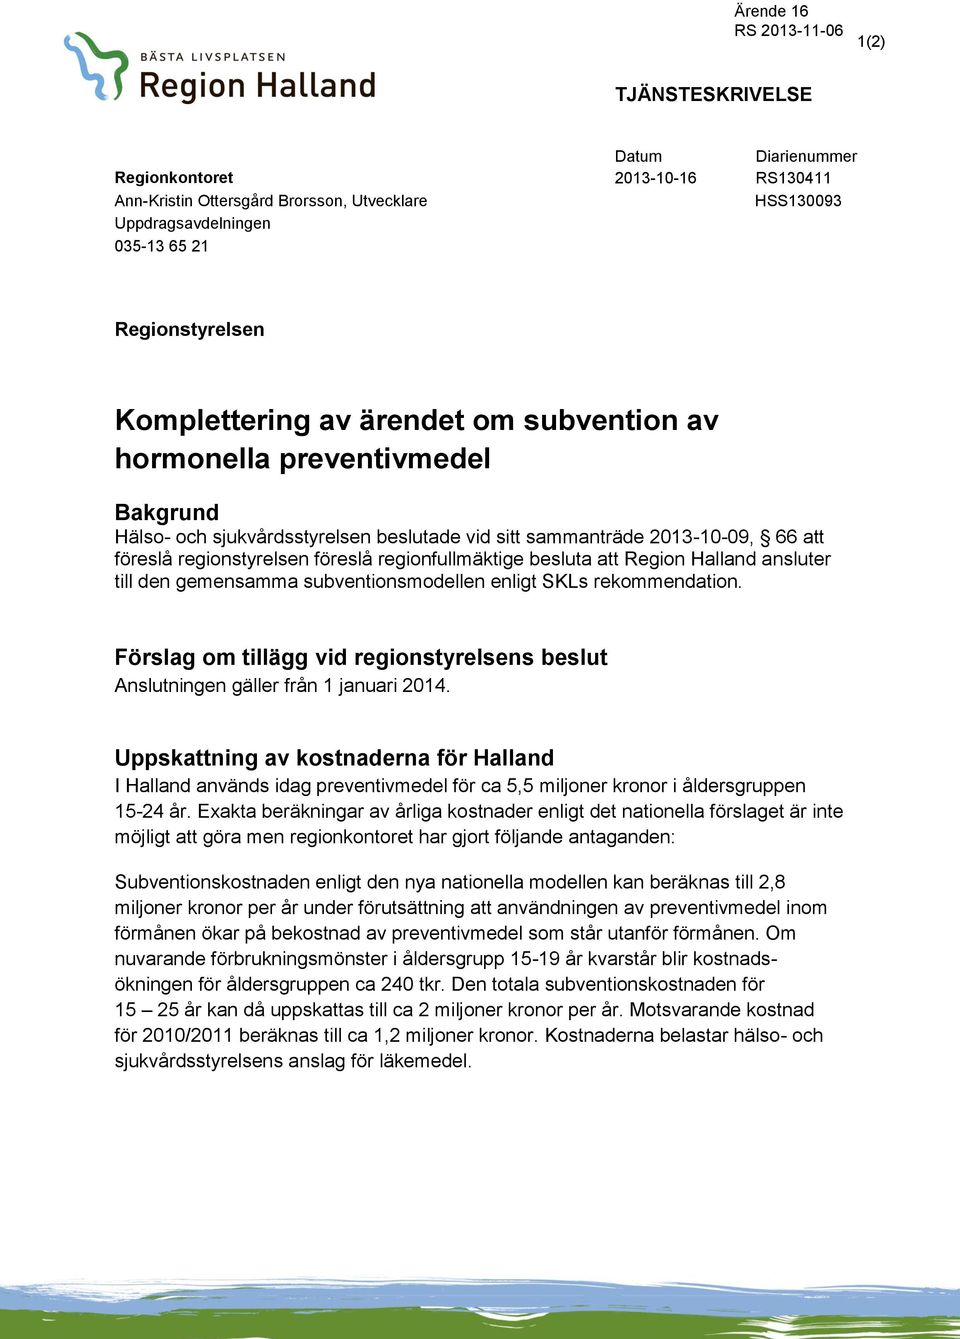 besluta att Region Halland ansluter till den gemensamma subventionsmodellen enligt SKLs rekommendation. Förslag om tillägg vid regionstyrelsens beslut Anslutningen gäller från 1 januari 2014.